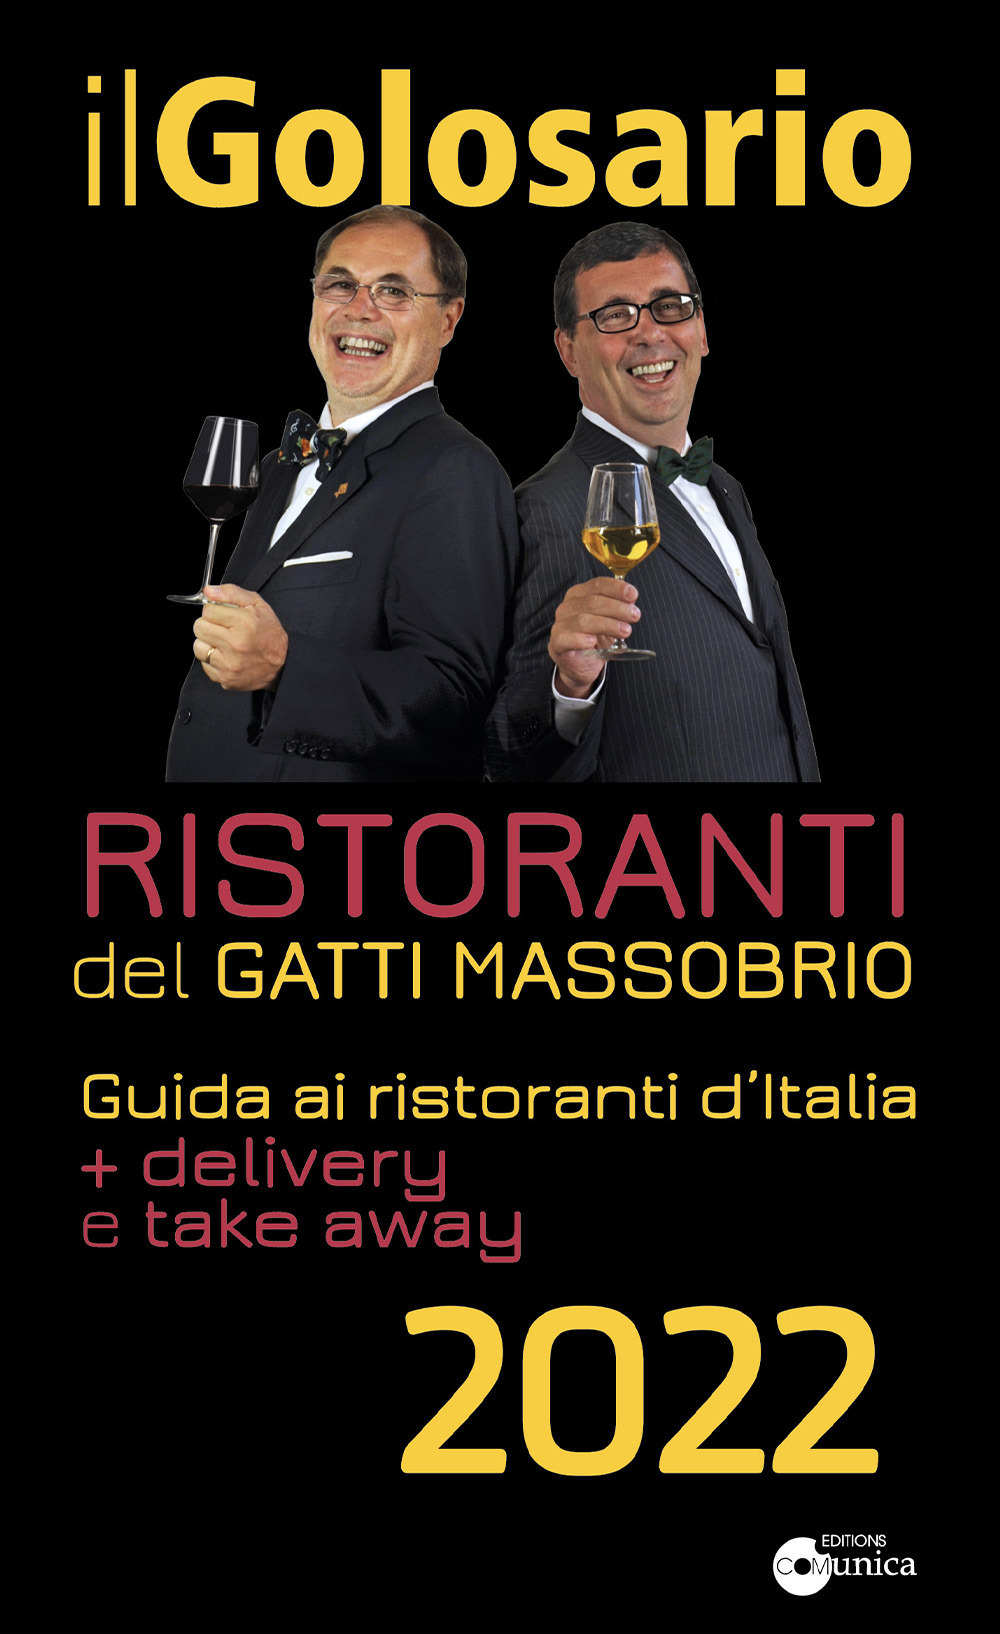 Image of Il golosario 2022. Guida ai ristoranti d'Italia + delivery e take away